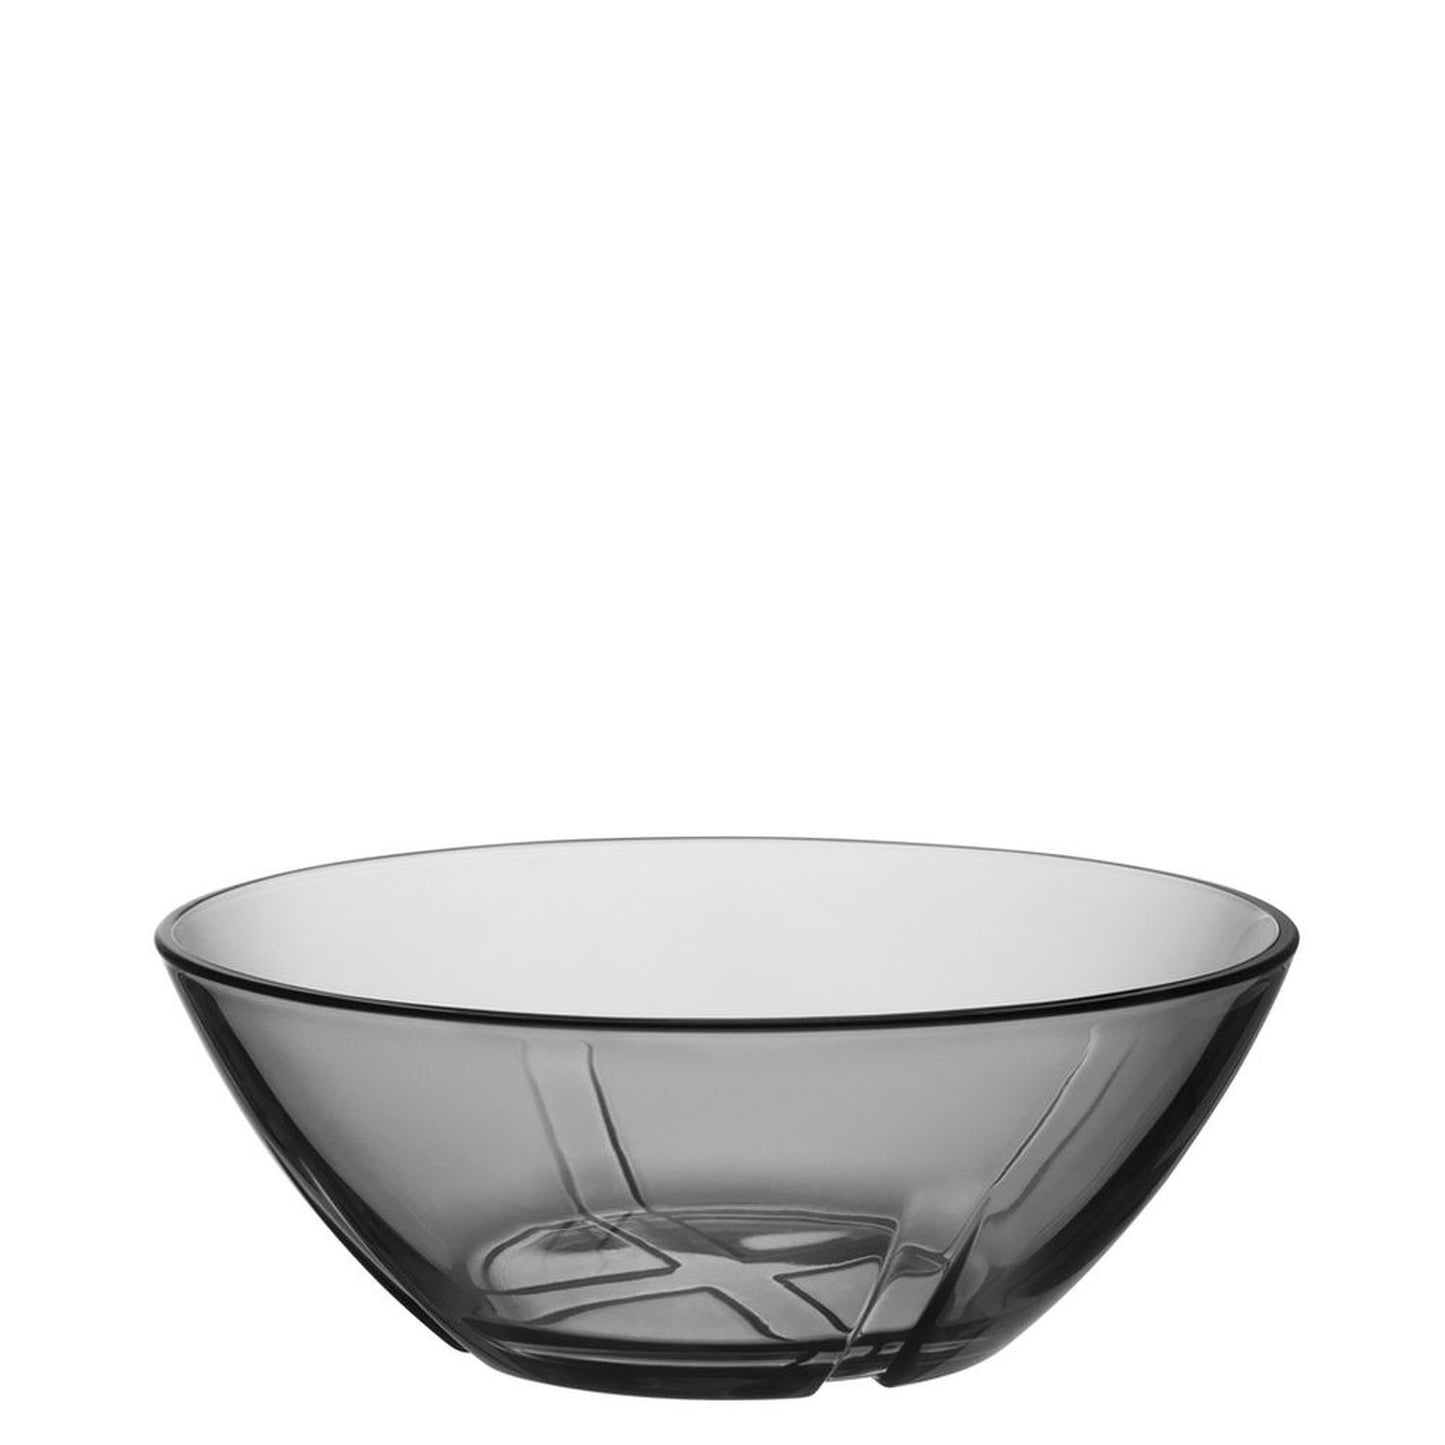 Kosta Boda Bruk Bowl Smoke Grey, Glass